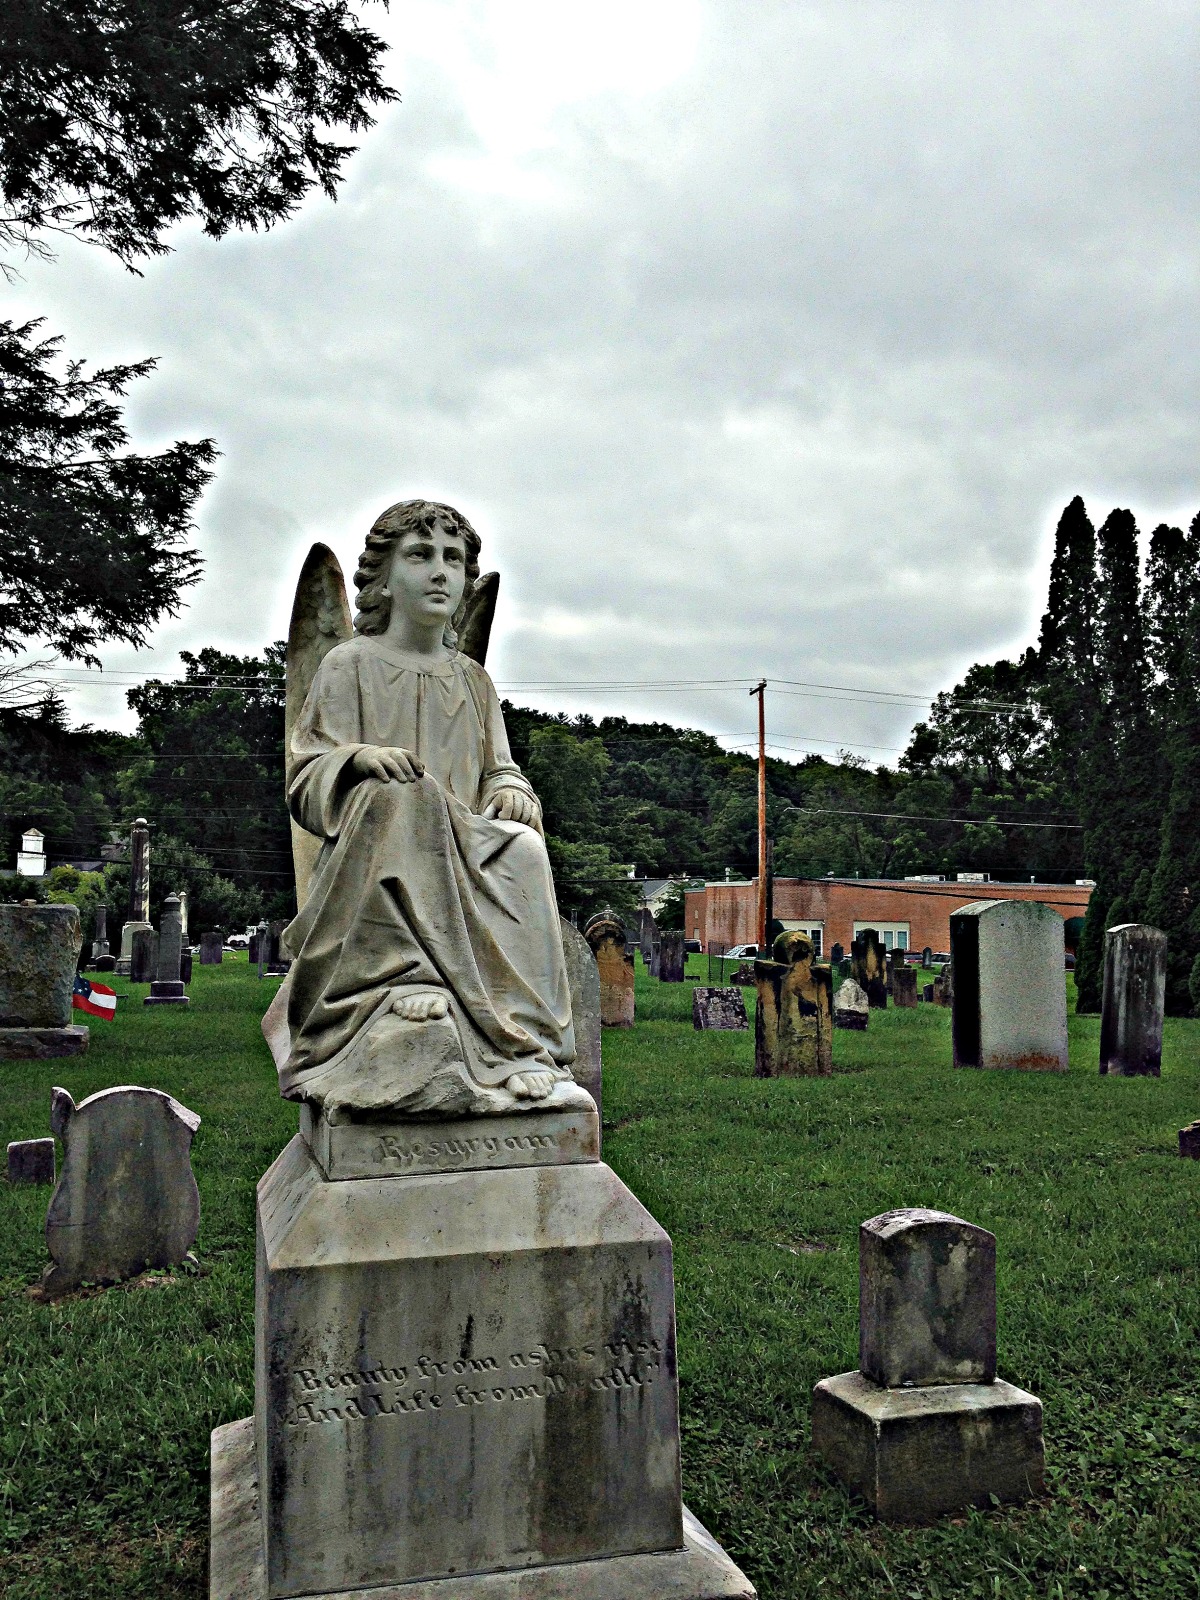 The Angel of Death in Lewisburg, West Virginia